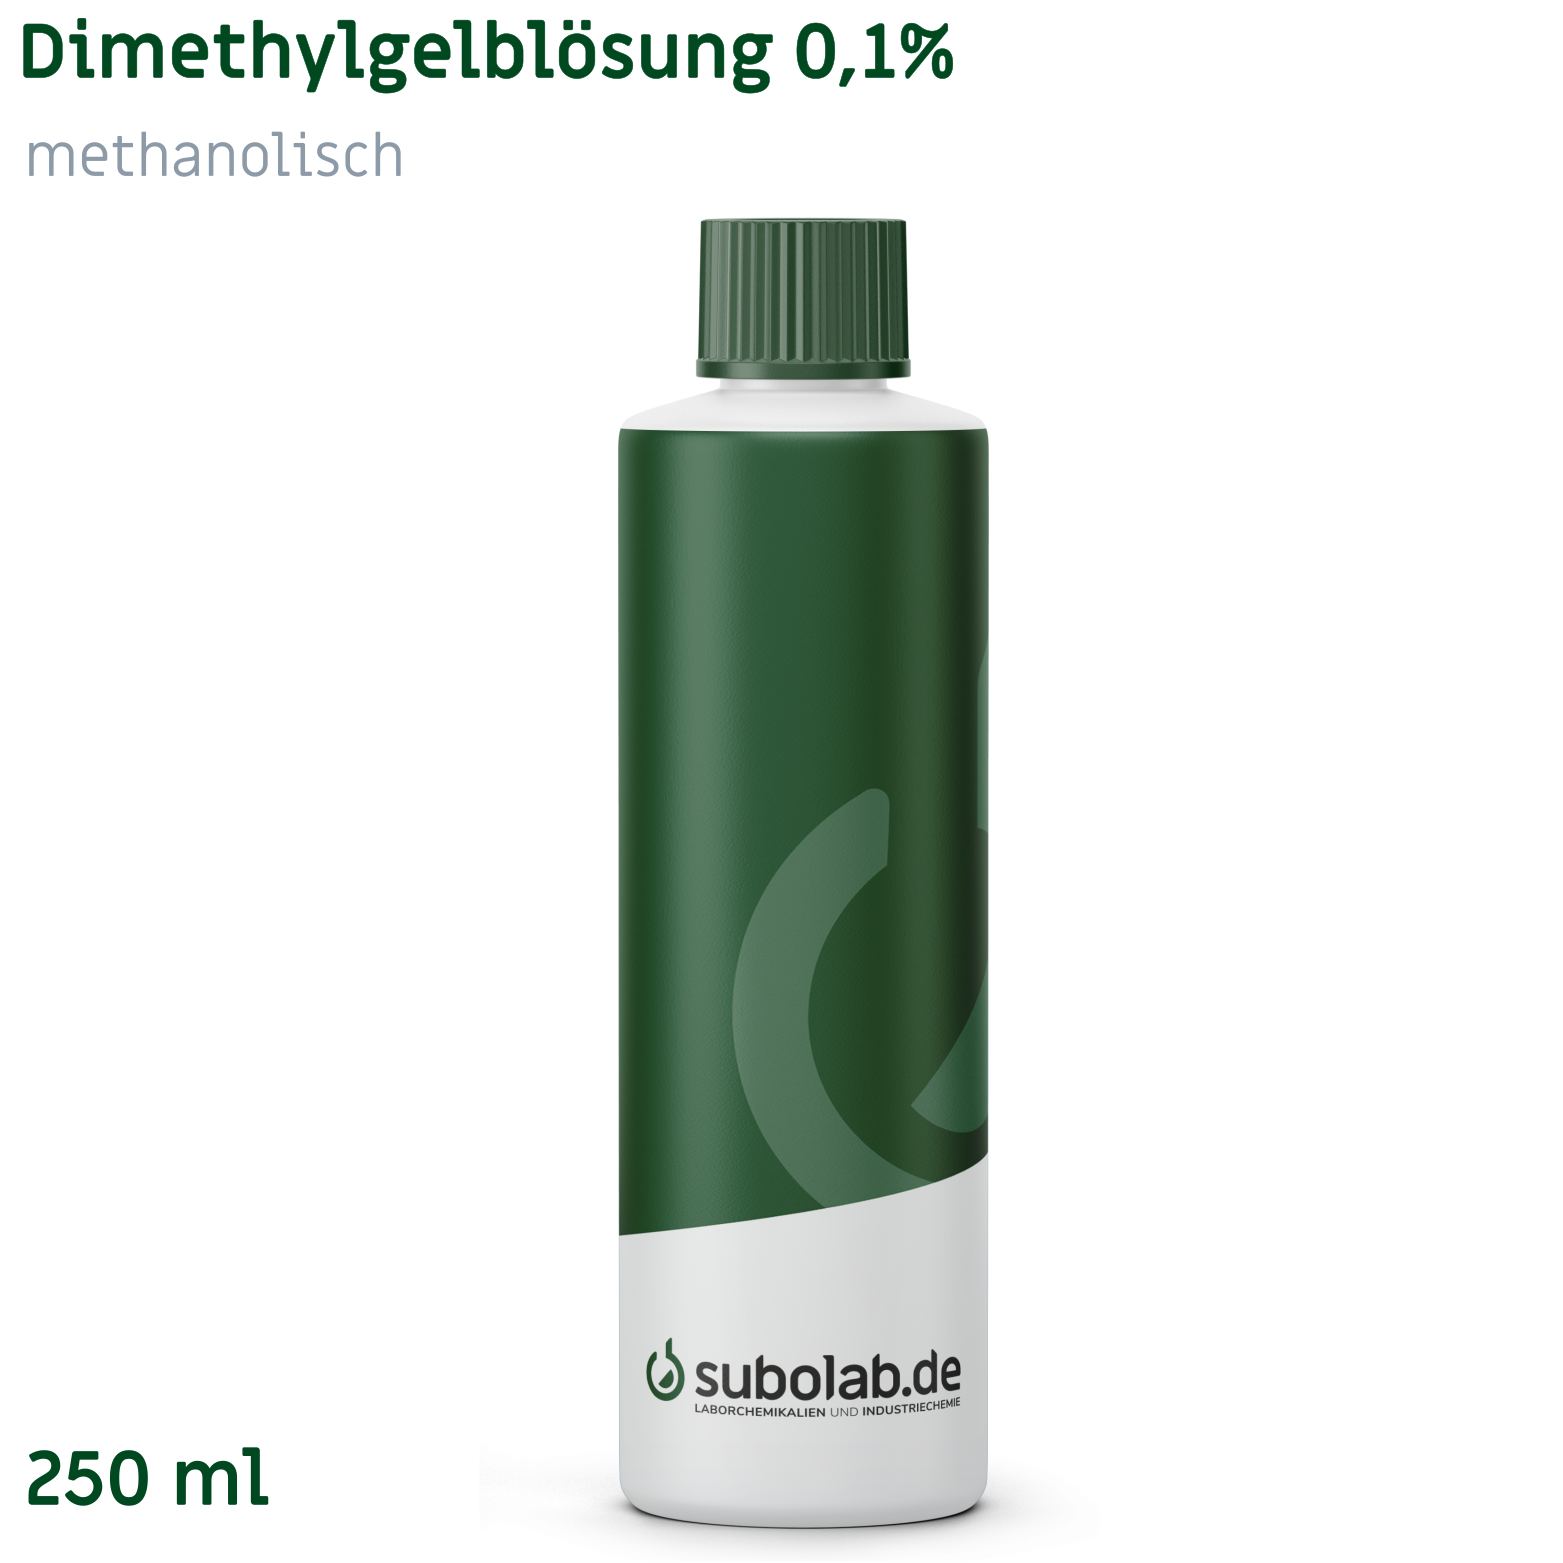 Bild von Dimethylgelblösung 0,1% methanolisch (250 ml)